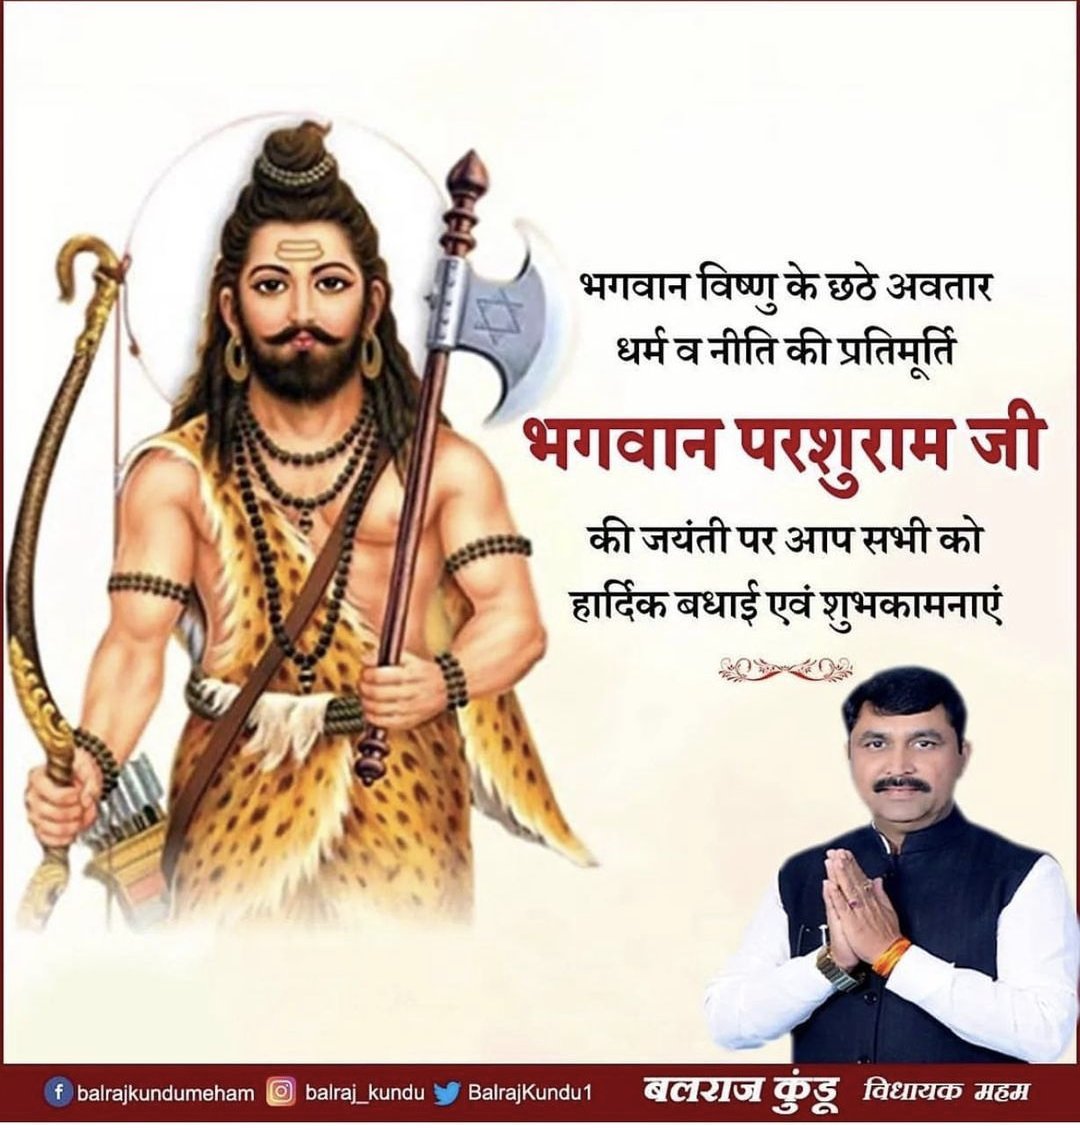 भगवान विष्णु के छठे अवतार, धर्म व नीति की प्रतिमूर्ति भगवान परशुराम जी की जयंती पर आप सभी को हार्दिक बधाई एवं शुभकामनाएं । #ParshuramJanmotsav